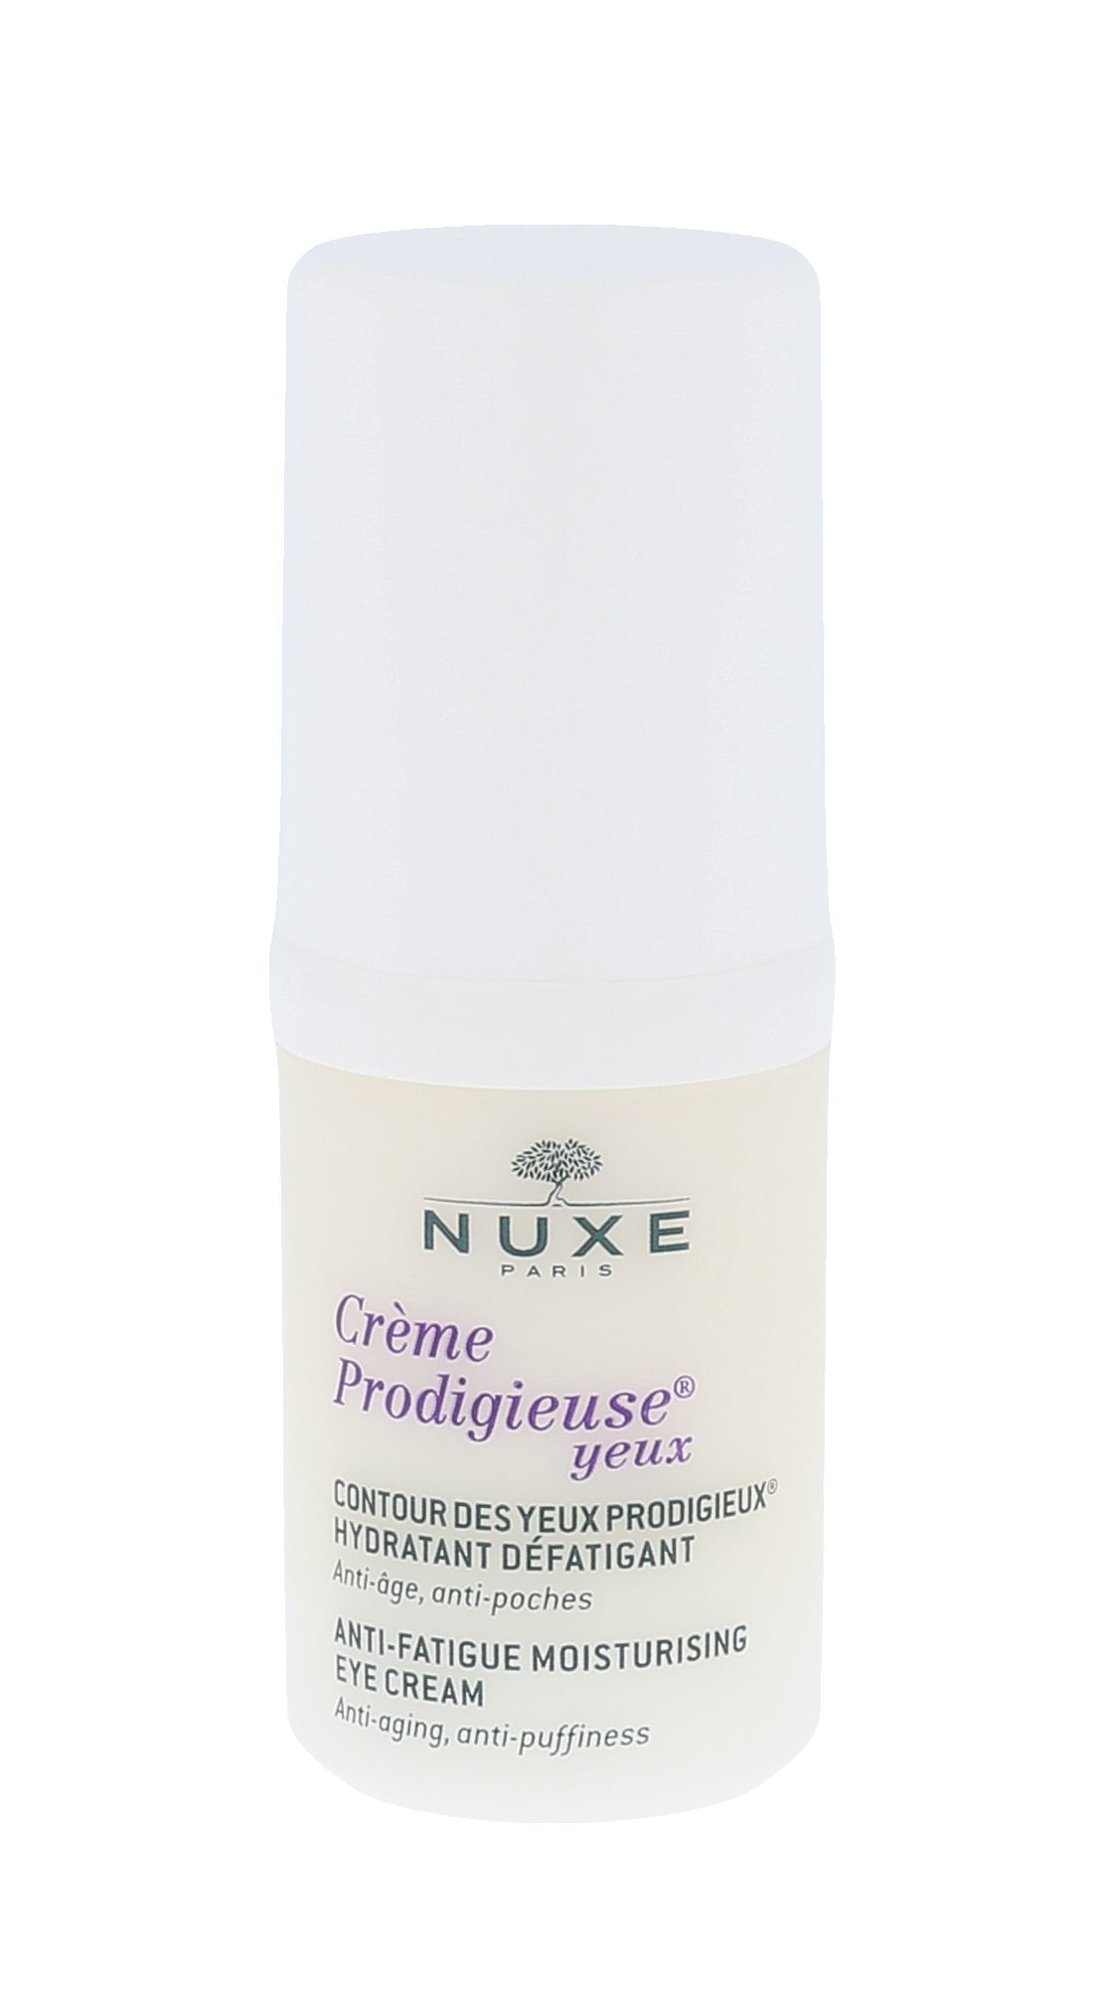 Nuxe Creme Prodigieuse Anti-Fatigue Moisturising Eye Cream paakių kremas